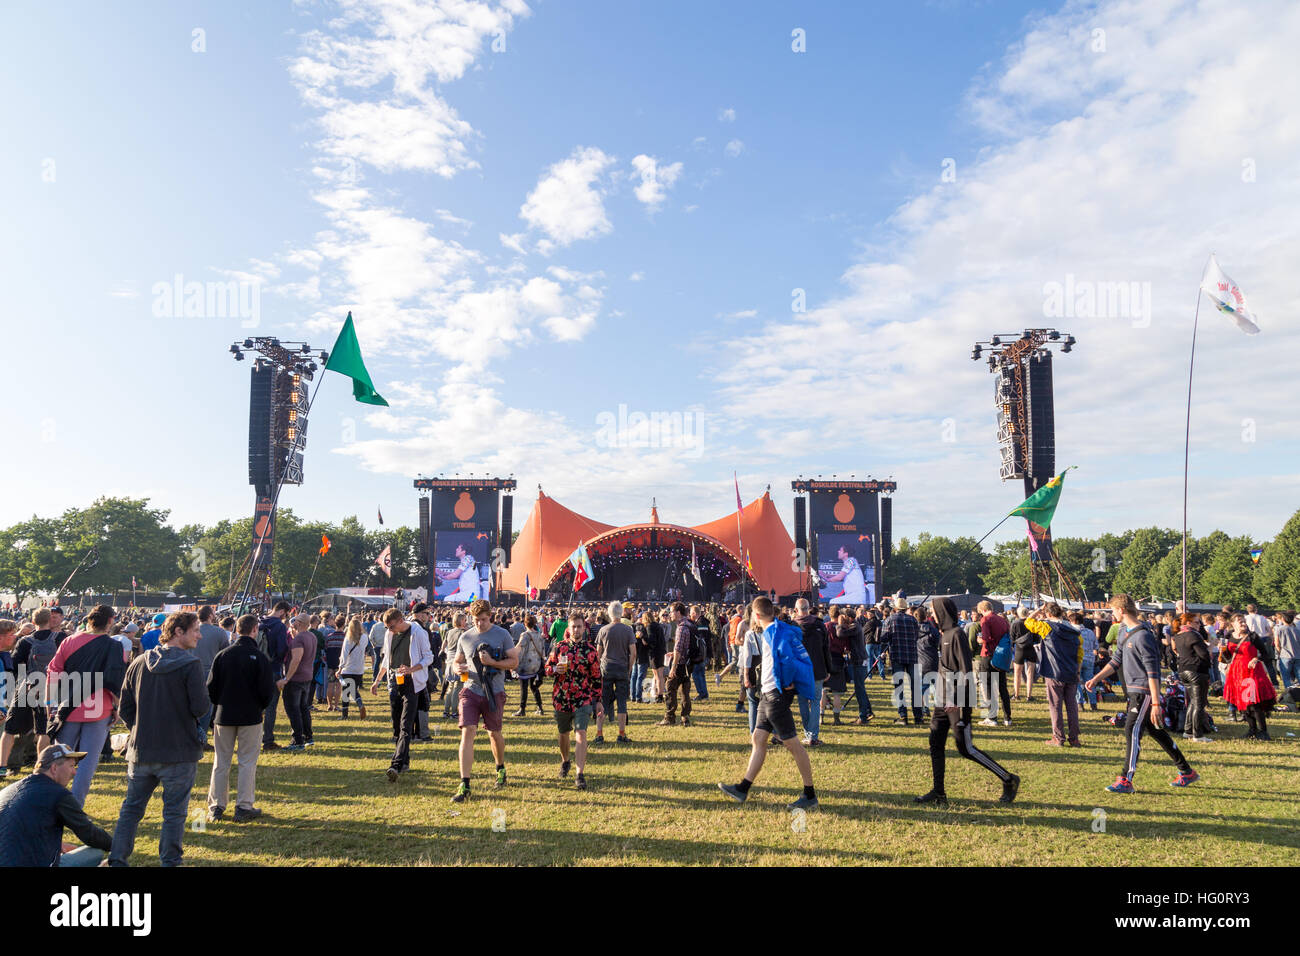 Roskilde, Danemark - 30 juin 2016 : foule de spectateurs profitant d'un concert au stade orange à Roskilde Festival 2016 Banque D'Images